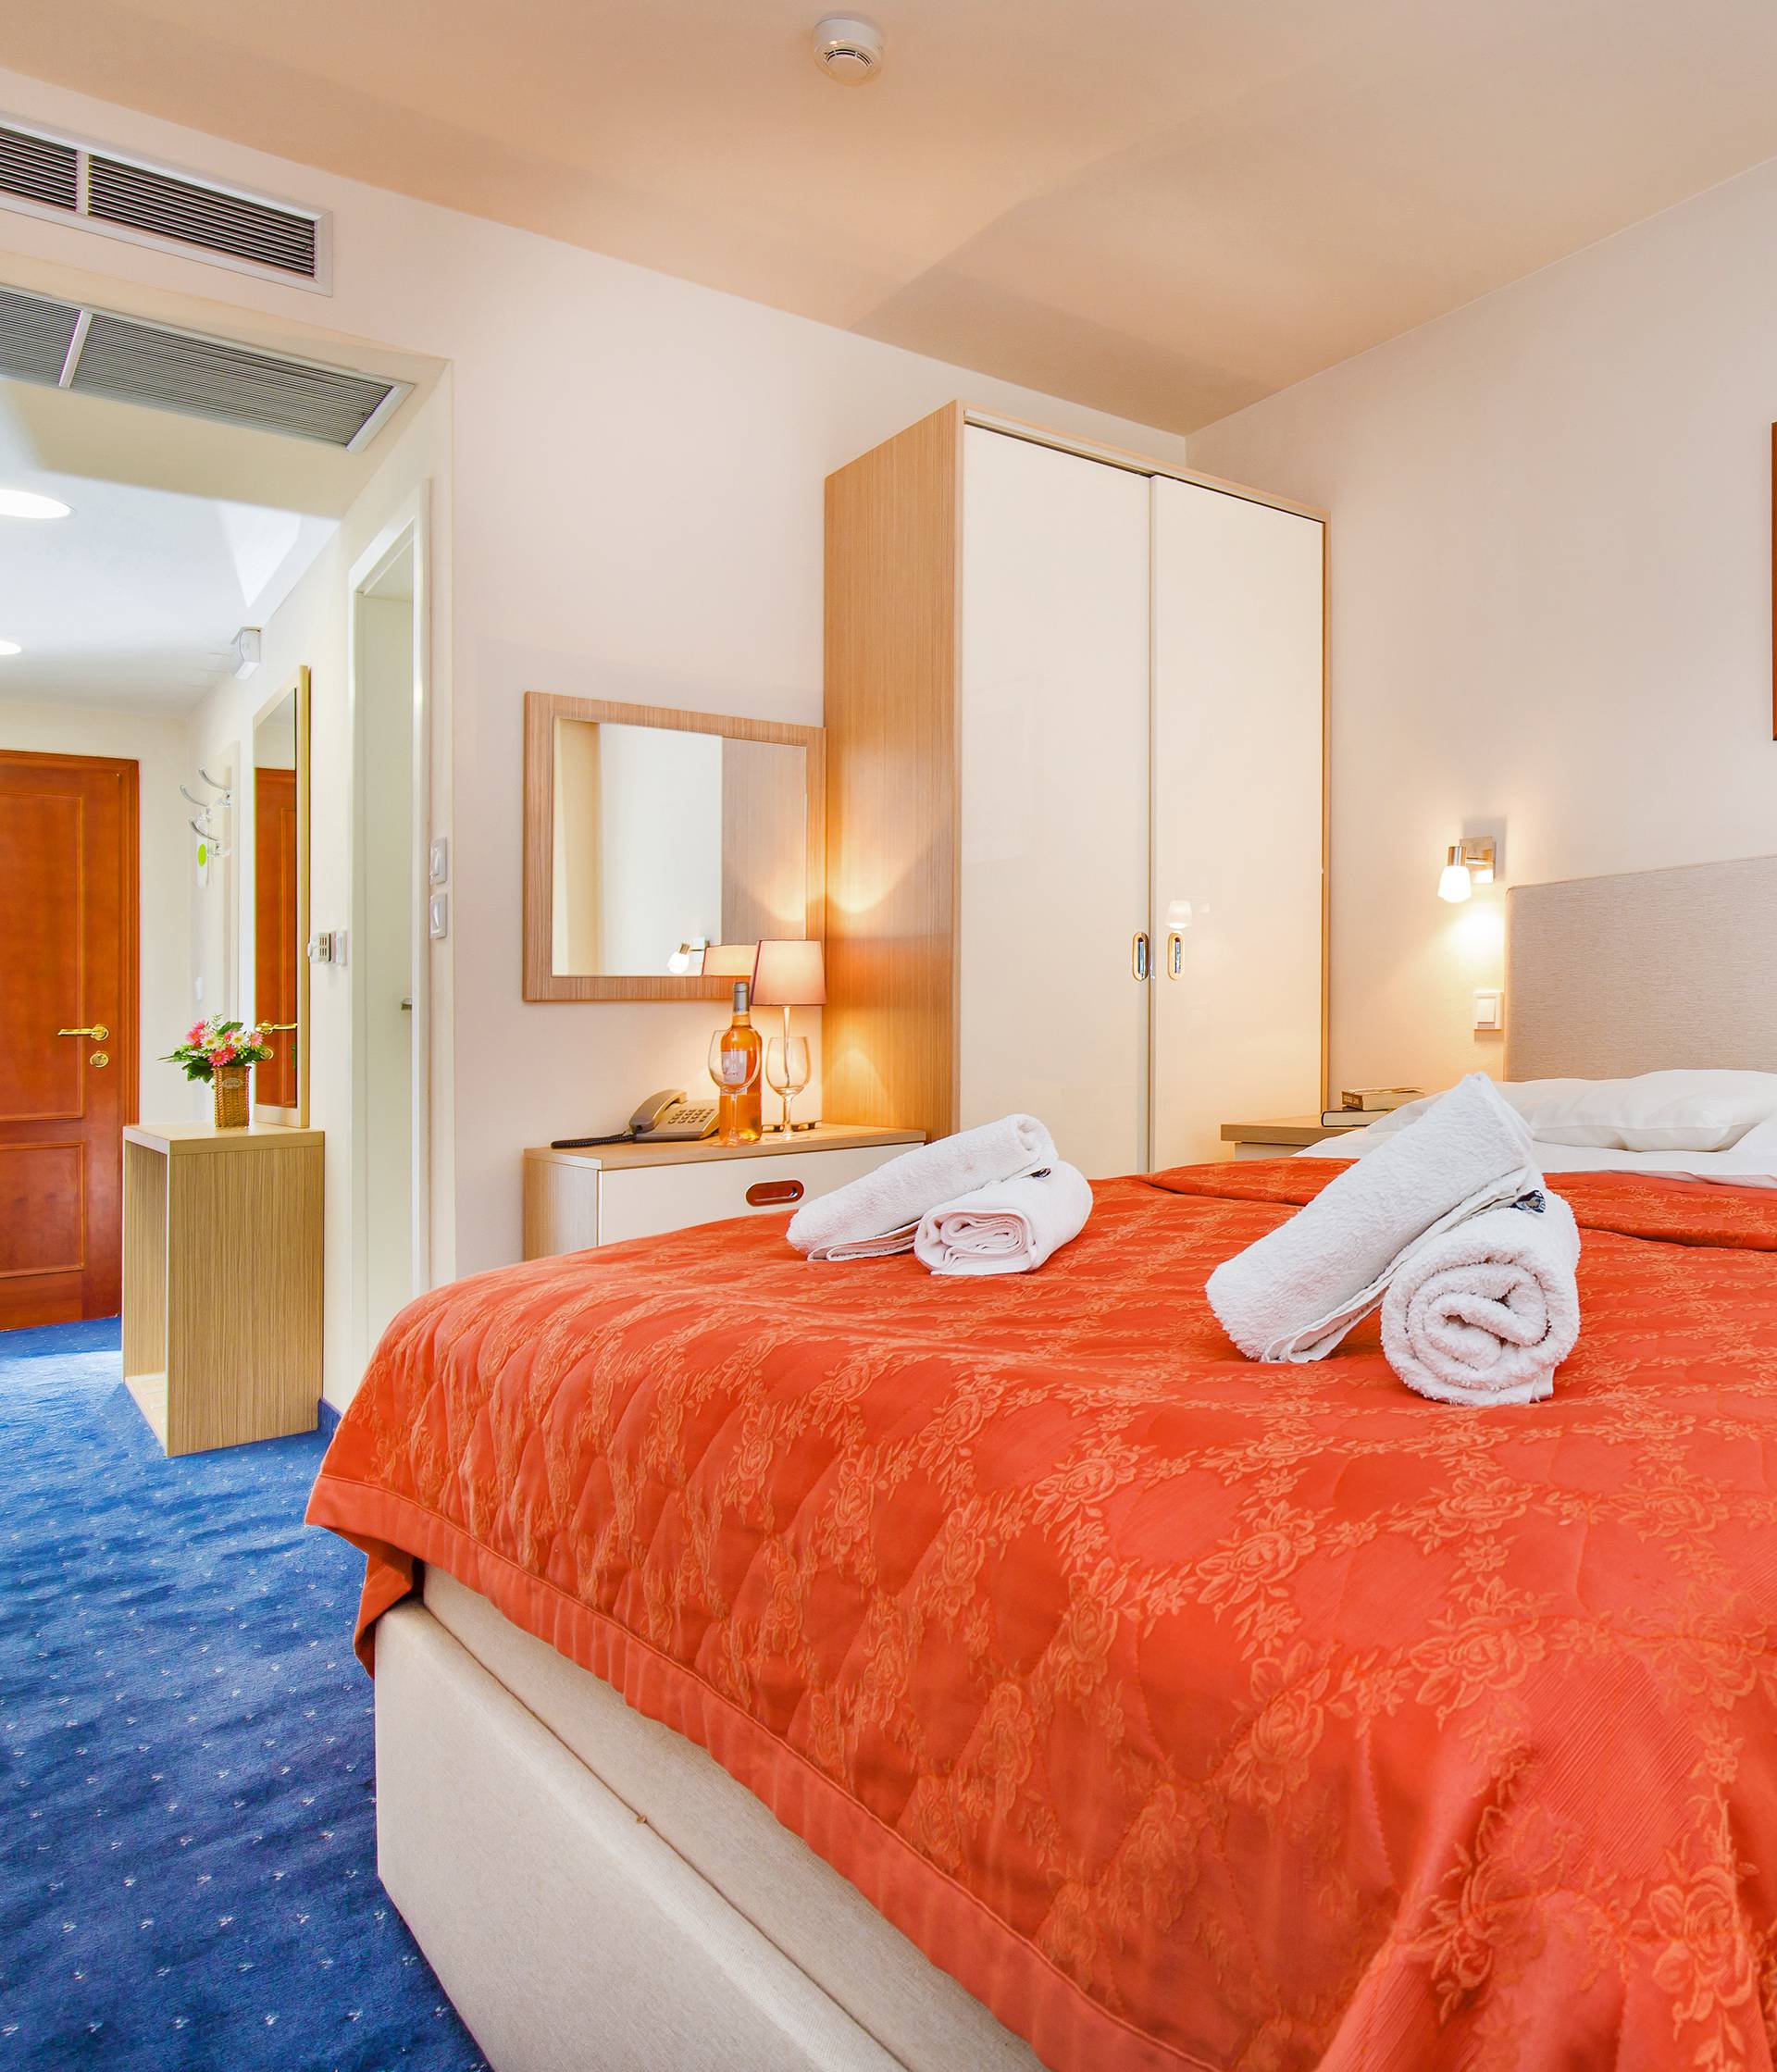 Provedite nezaboravni odmor u vrhunskom hotelu Dubrovnik